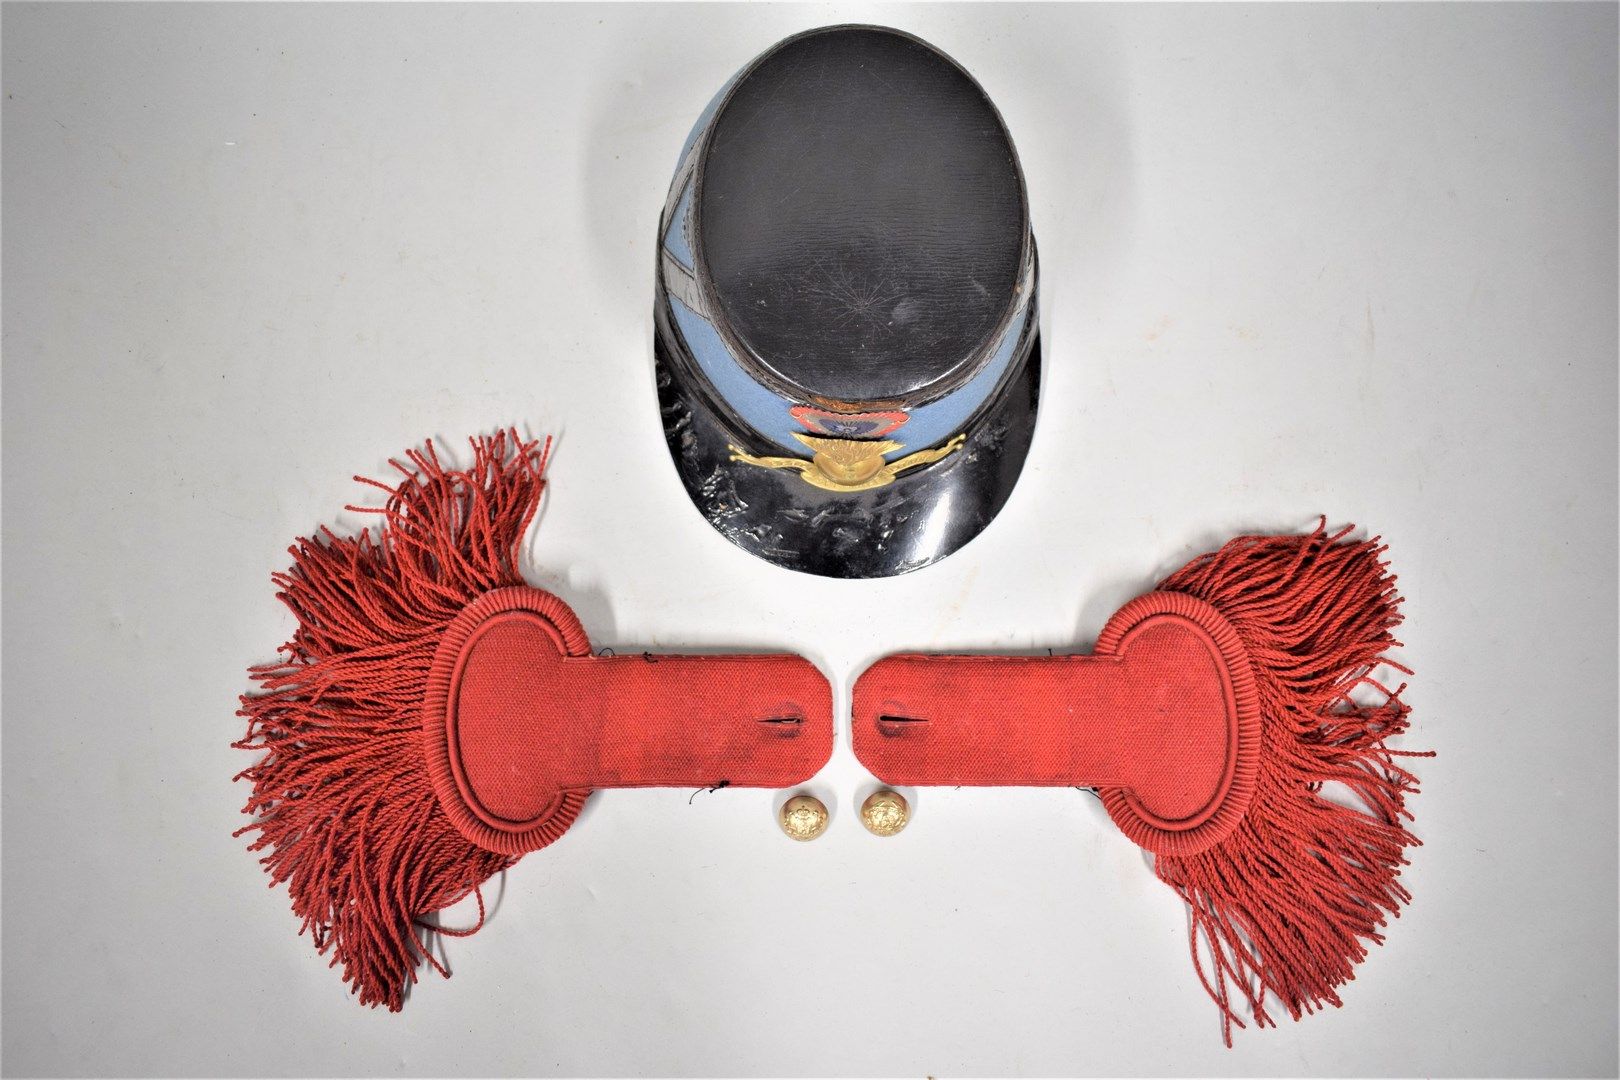 Null 一个圣西尔学生的套装，包括:

传统沙克

一对与头饰相同编号的红色毛料肩章

(罕见)

1882型军官军刀，带服务带

套装状况良好。